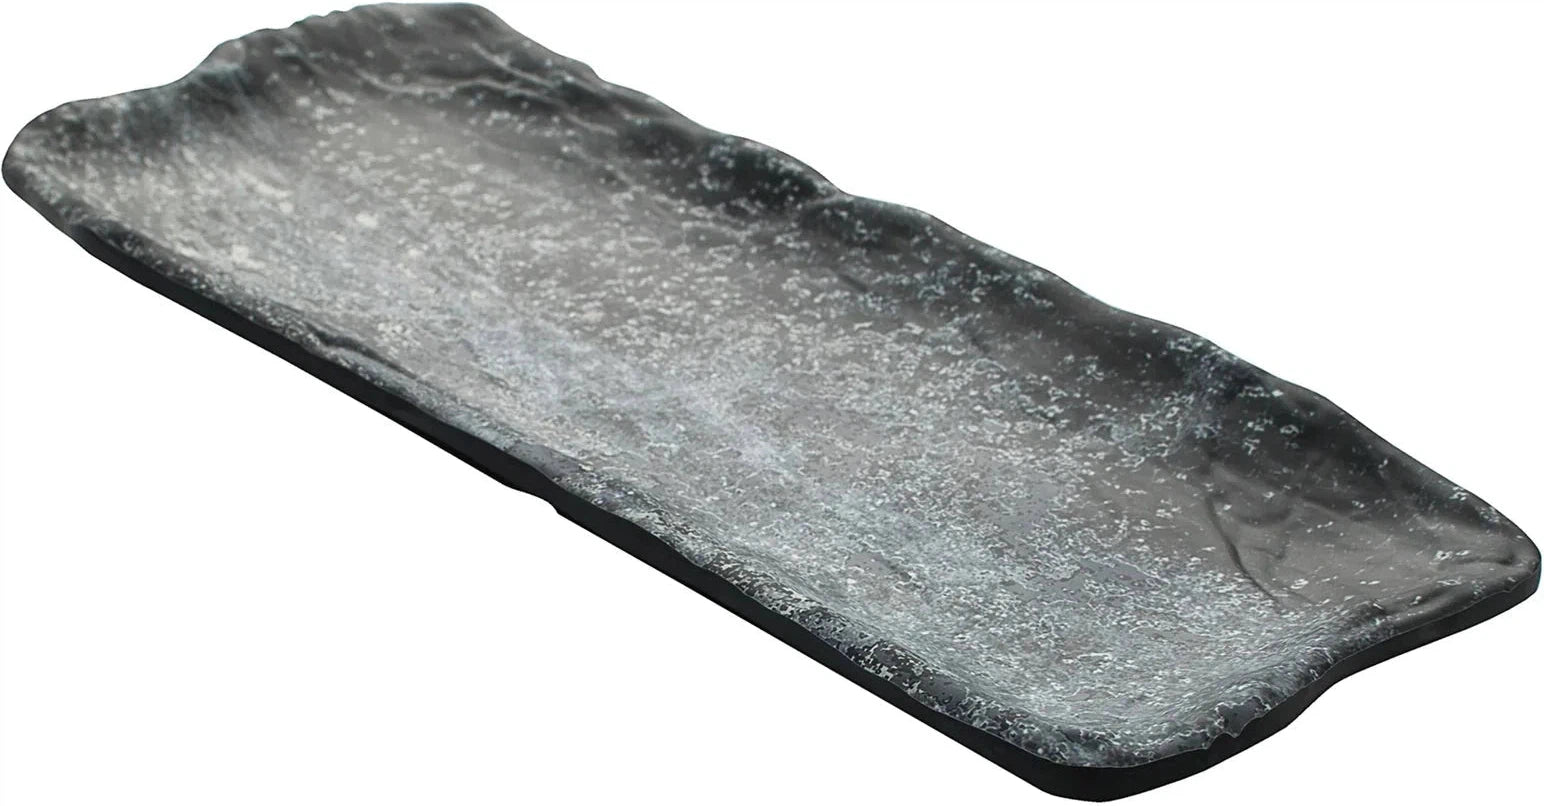 Cheforward - Endure 11.8" Weathered Pewter Oblong Large Melamine Plate - 15005103007